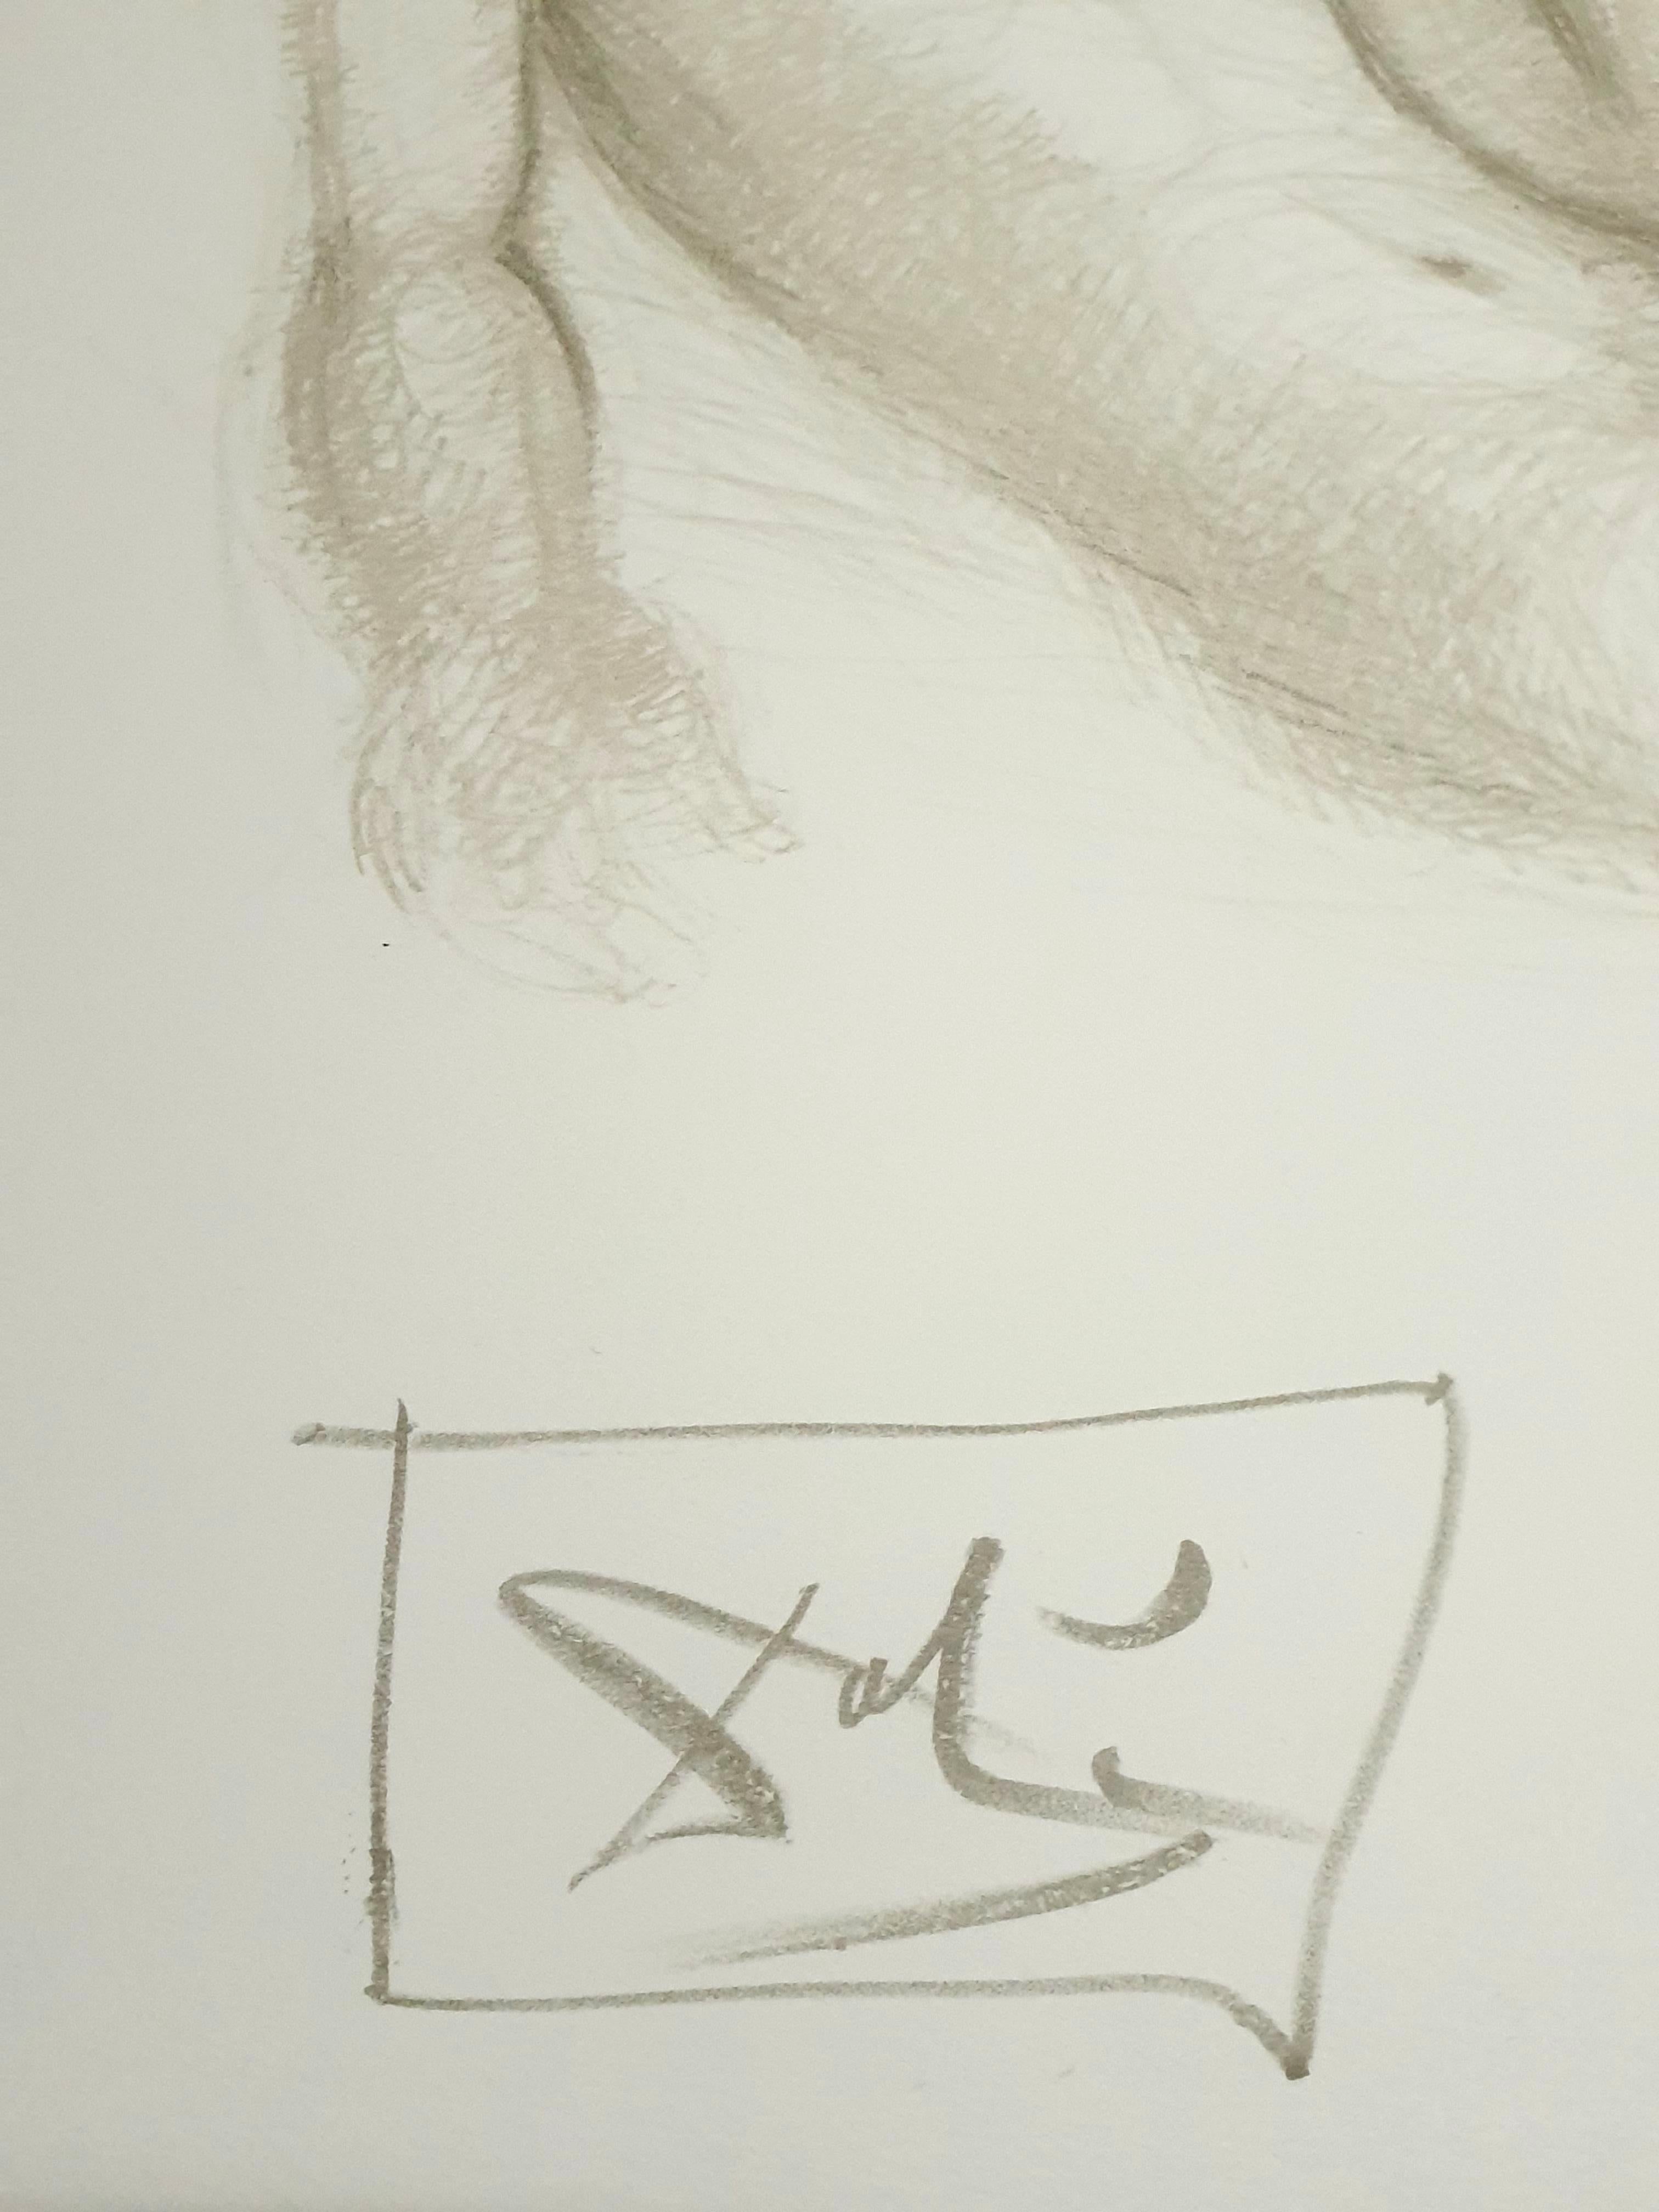 Salvador Dali - Couples nus - Lithographie originale signée à la main
Dimensions : 52 x 65 cm
1970
Signé au crayon et numéroté
Edition : /CXX
Références : Champ 70-8